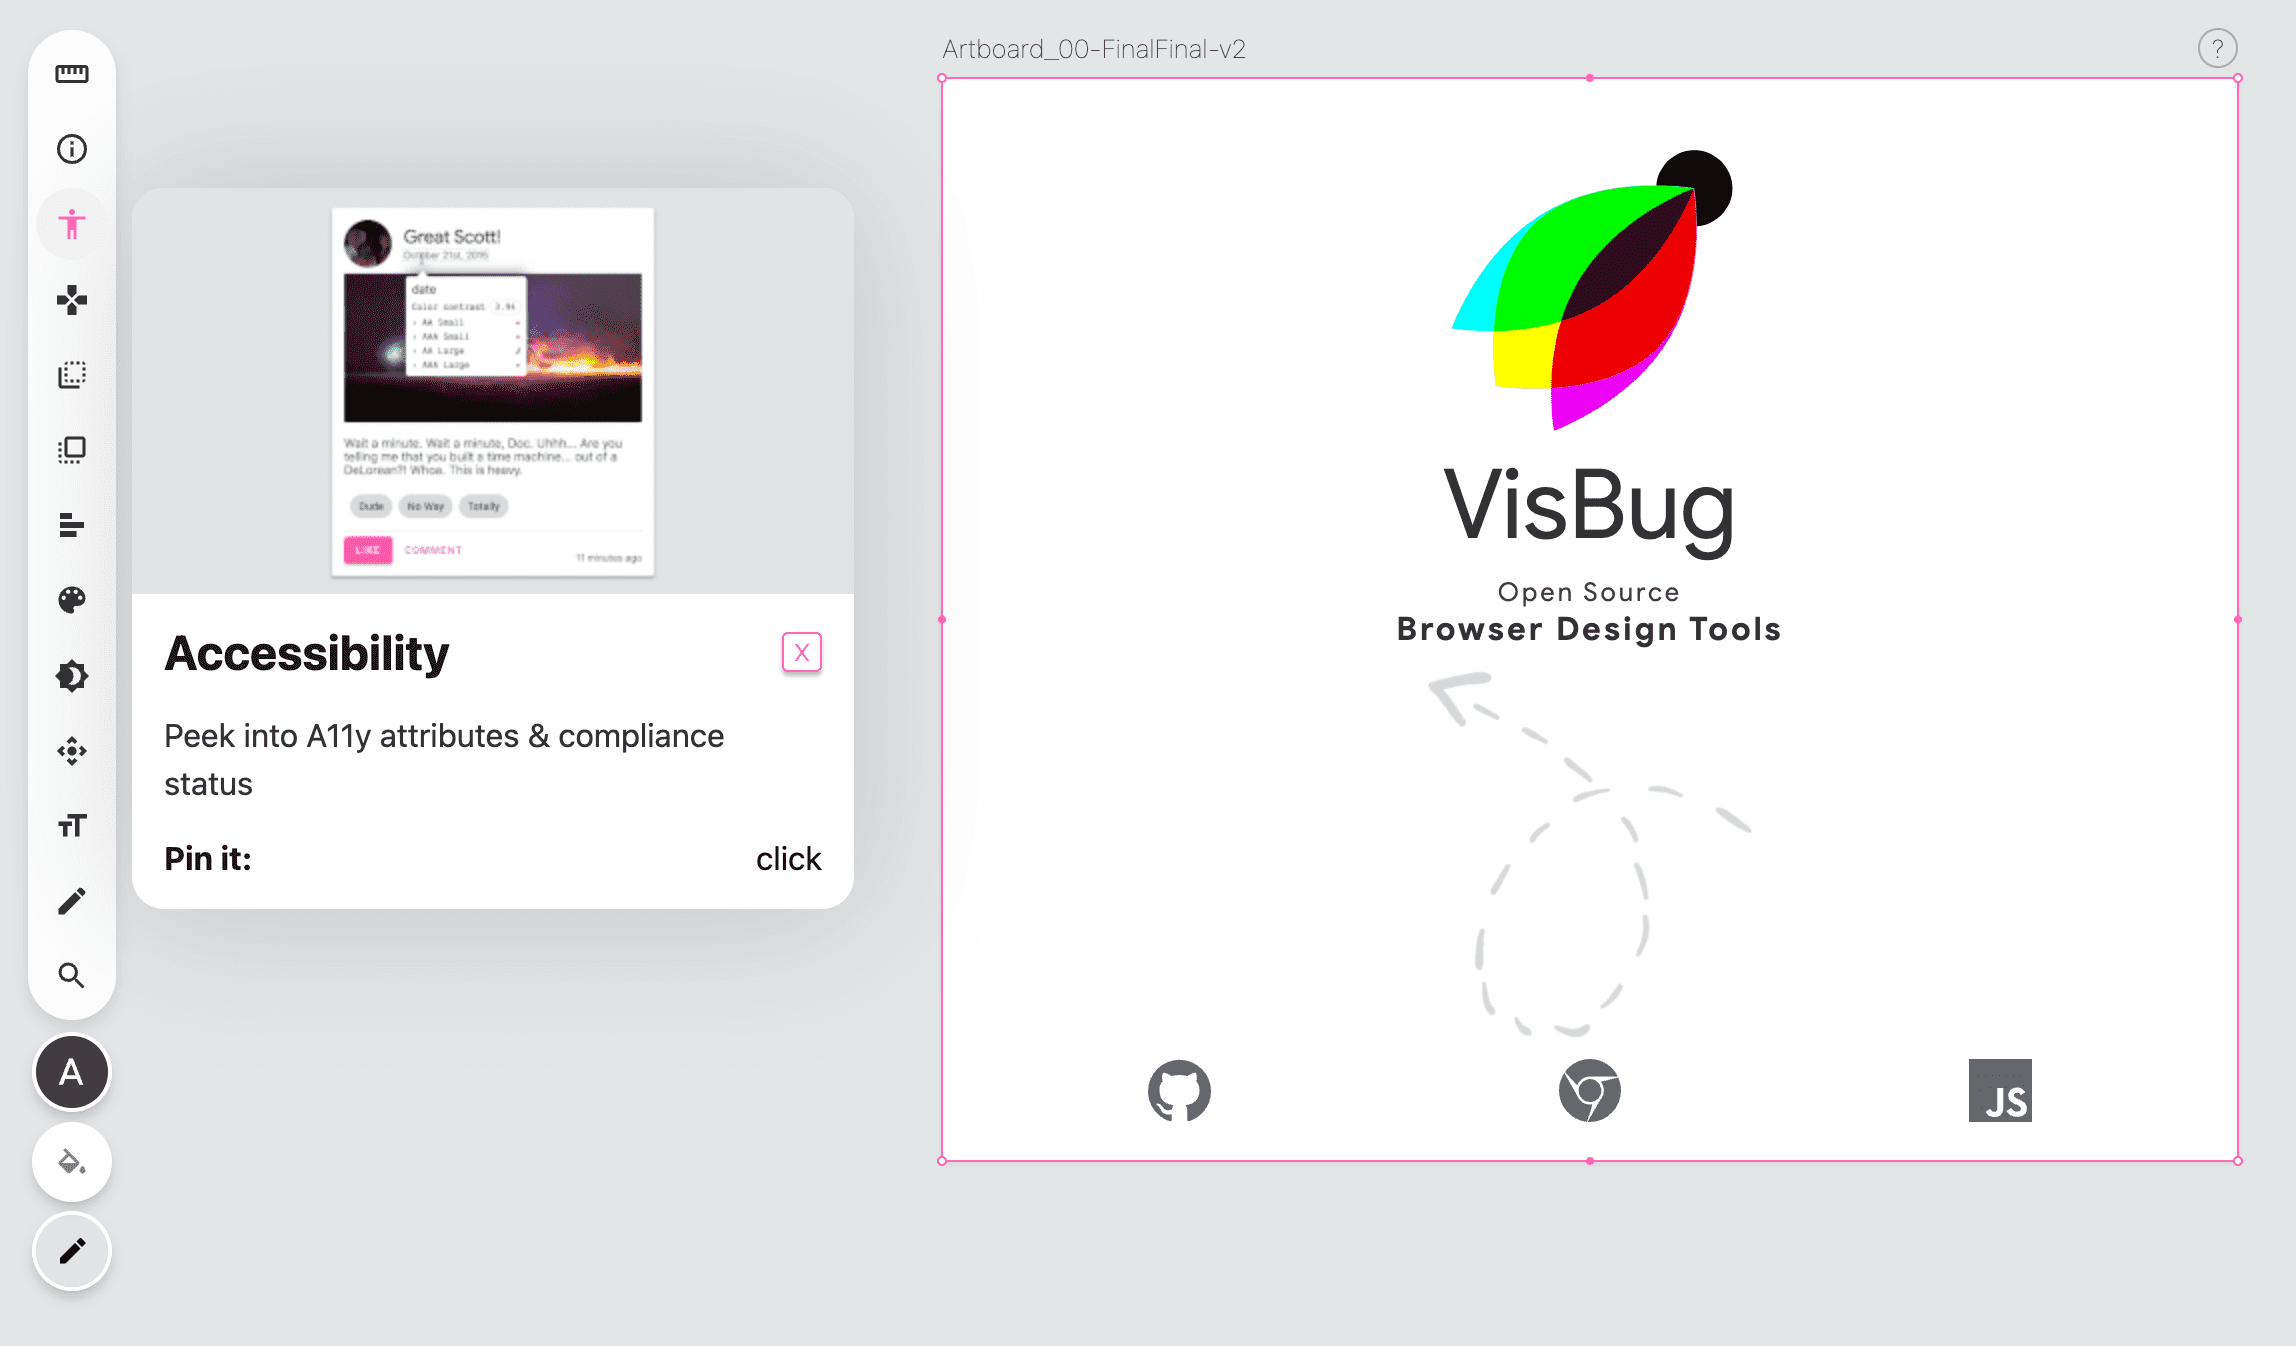 ภาพหน้าจอของแถบเครื่องมือ VisBug ทางด้านซ้ายของหน้าว่าง ไอคอนเครื่องมือการเข้าถึงเป็นสีชมพู และป๊อปอัปแสดงคำแนะนำของเครื่องมือ